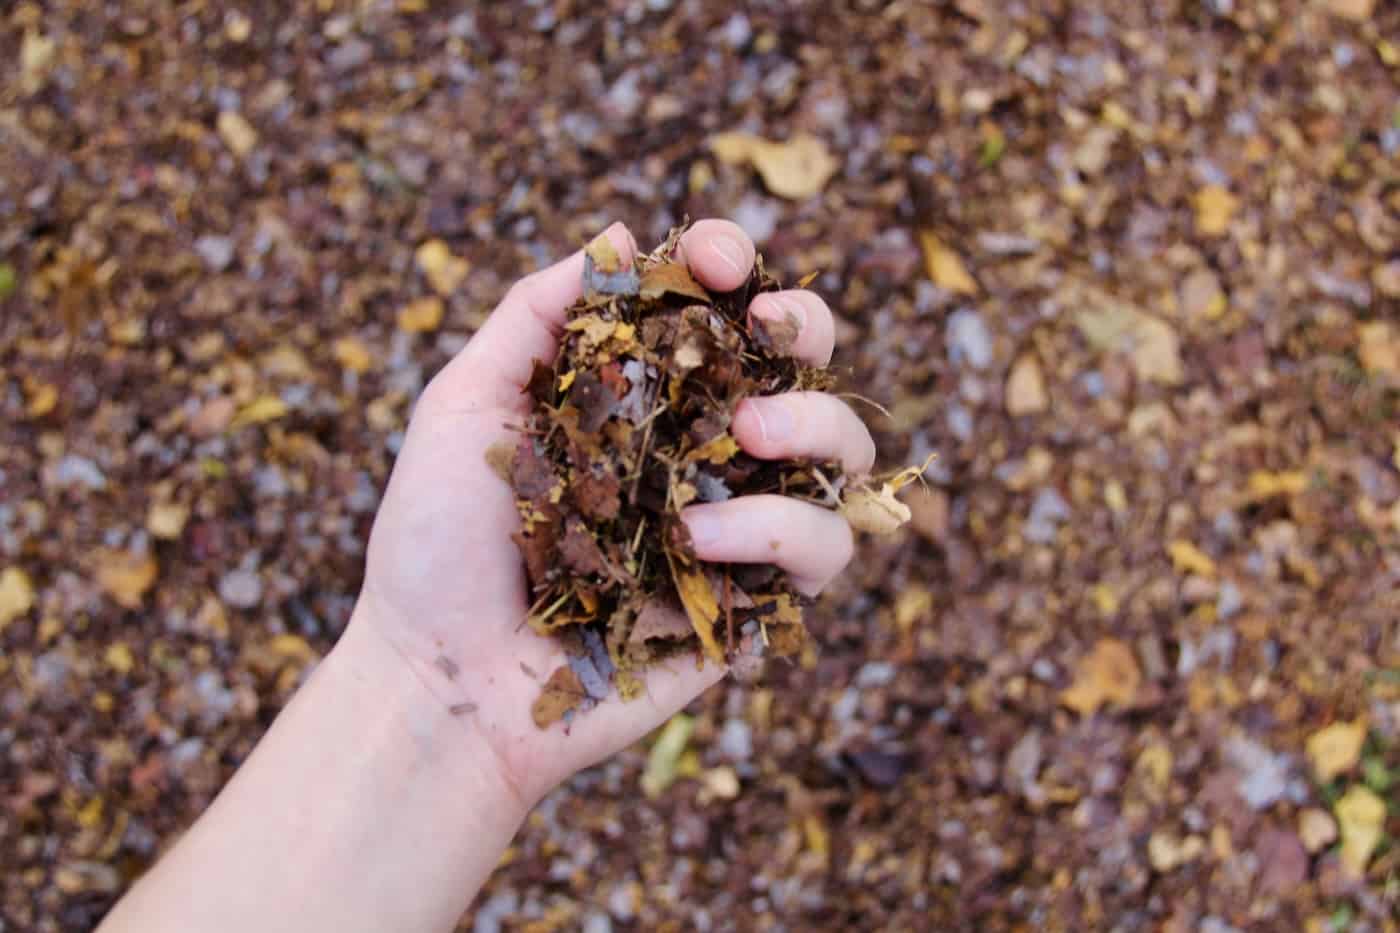 Shredded autumn leaves